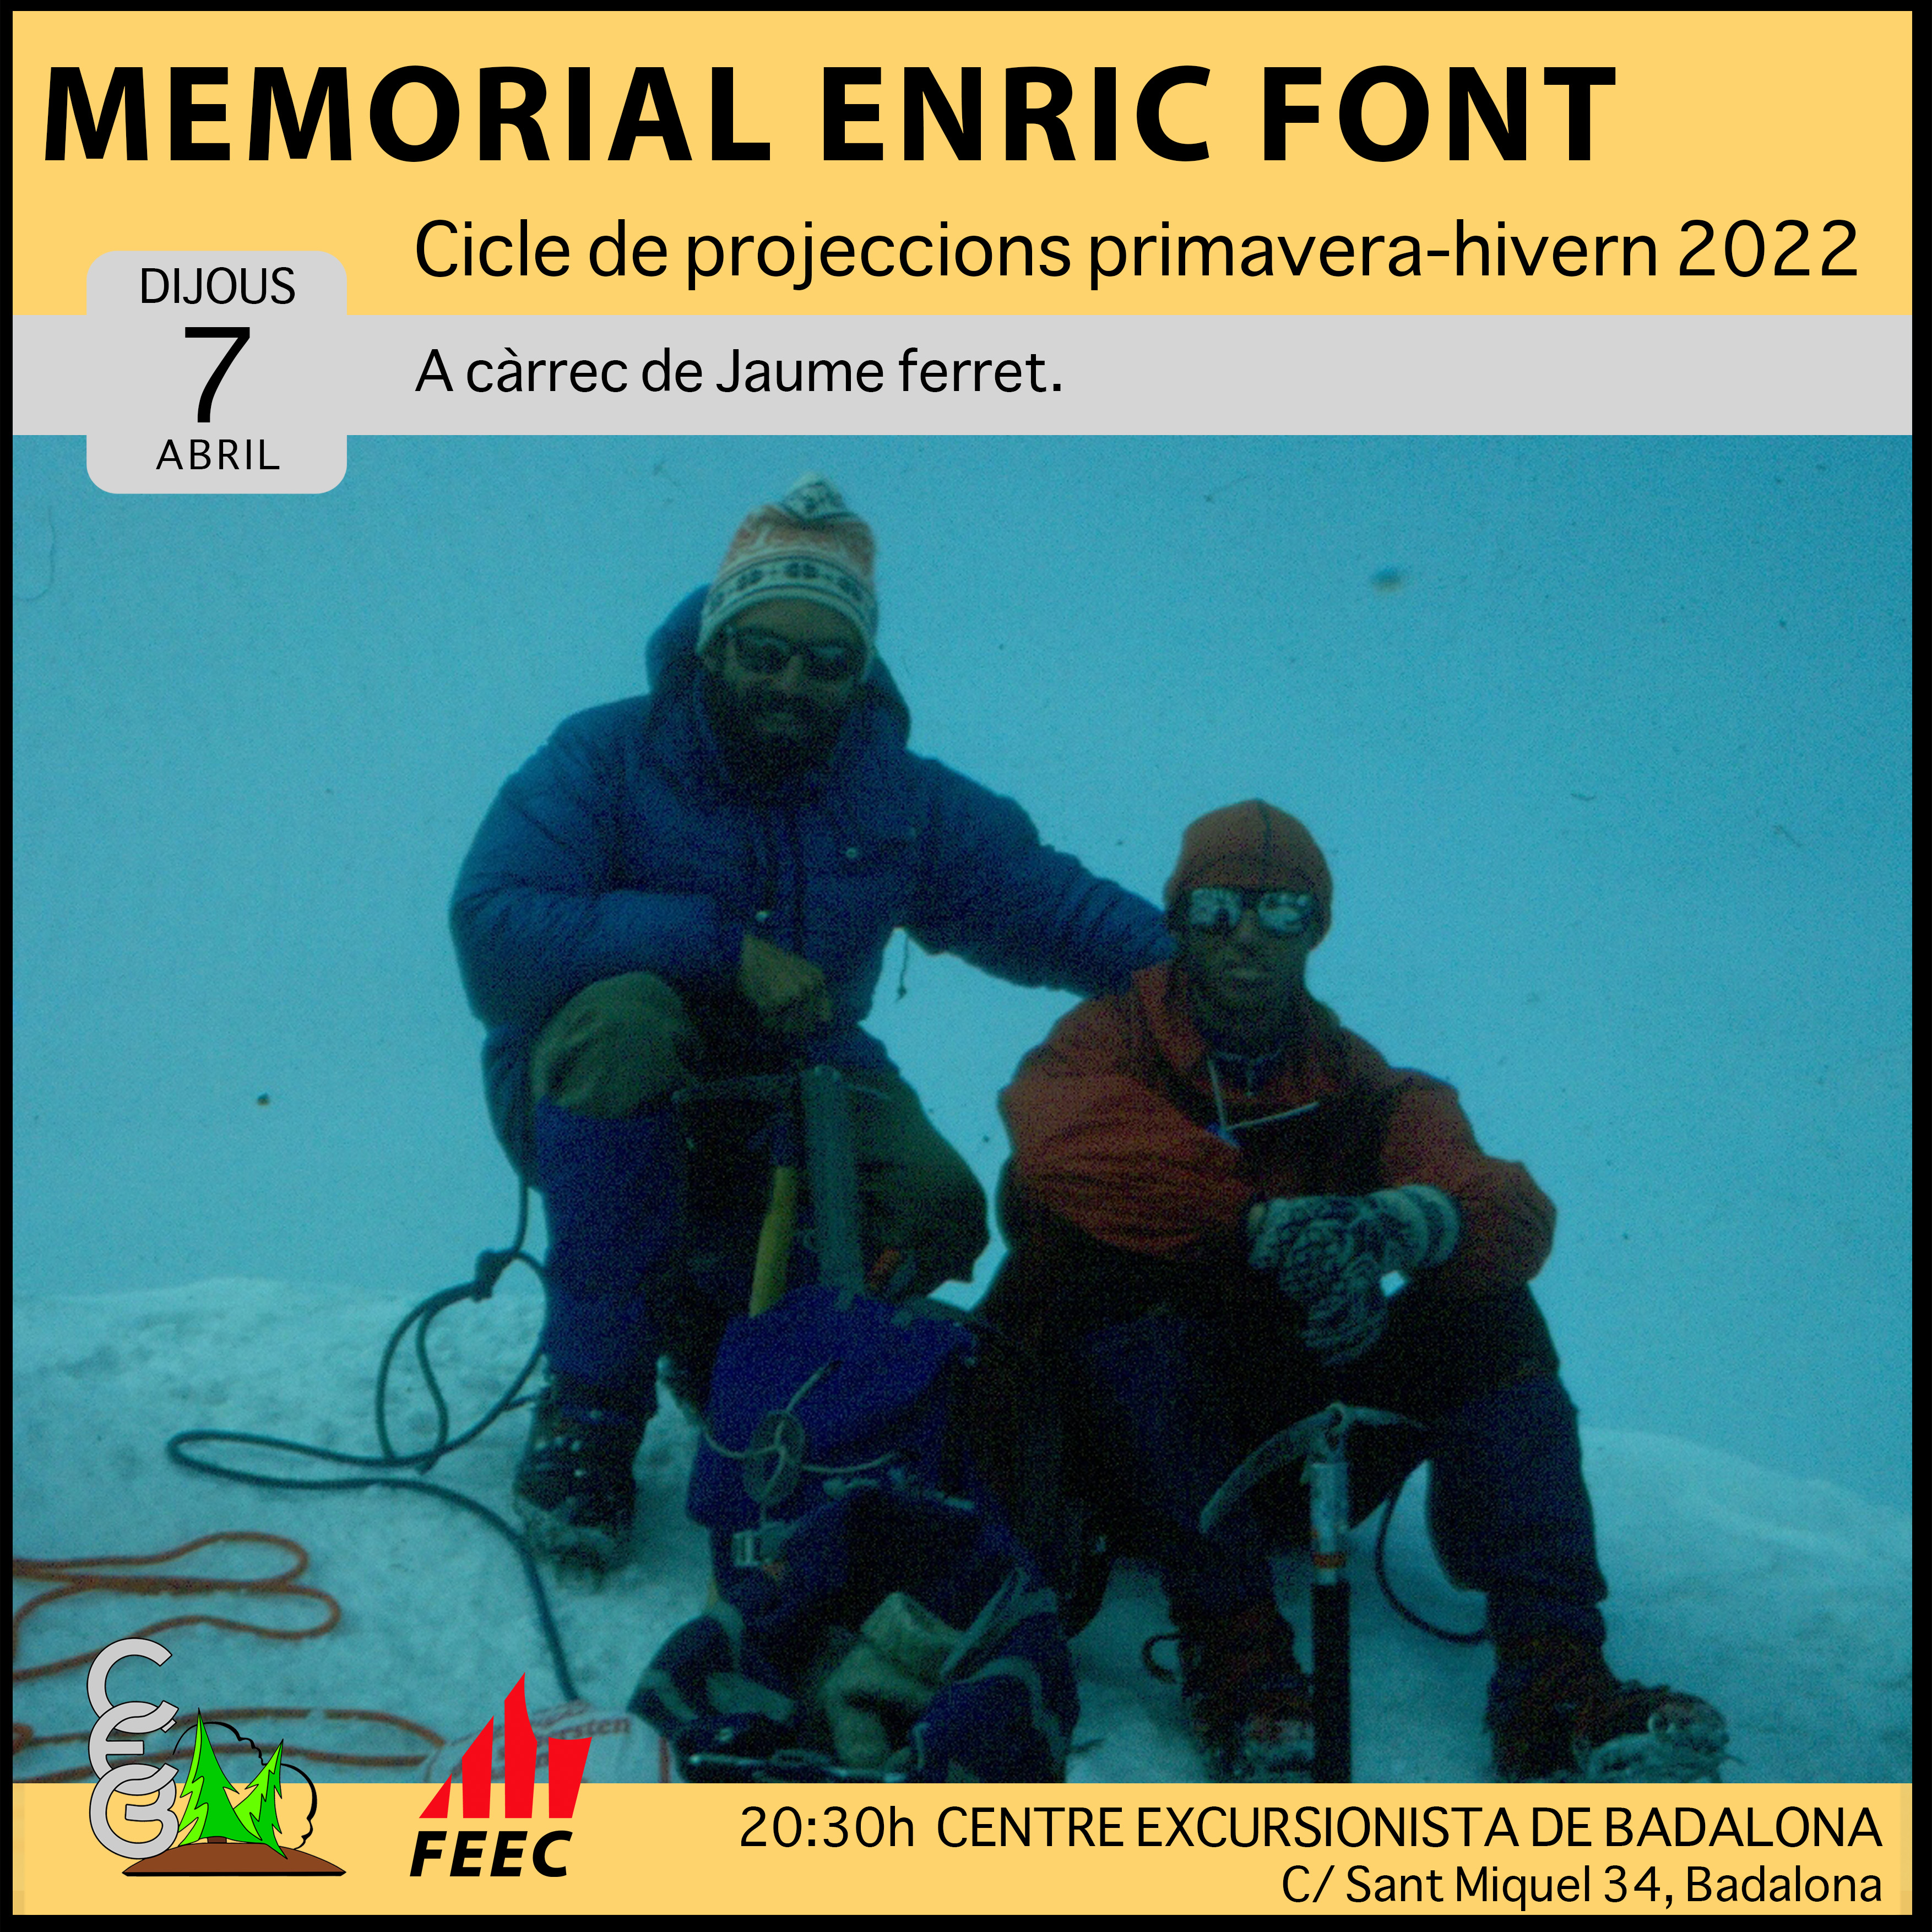 CICLE DE PROJECCIONS - Memorial Enric Font